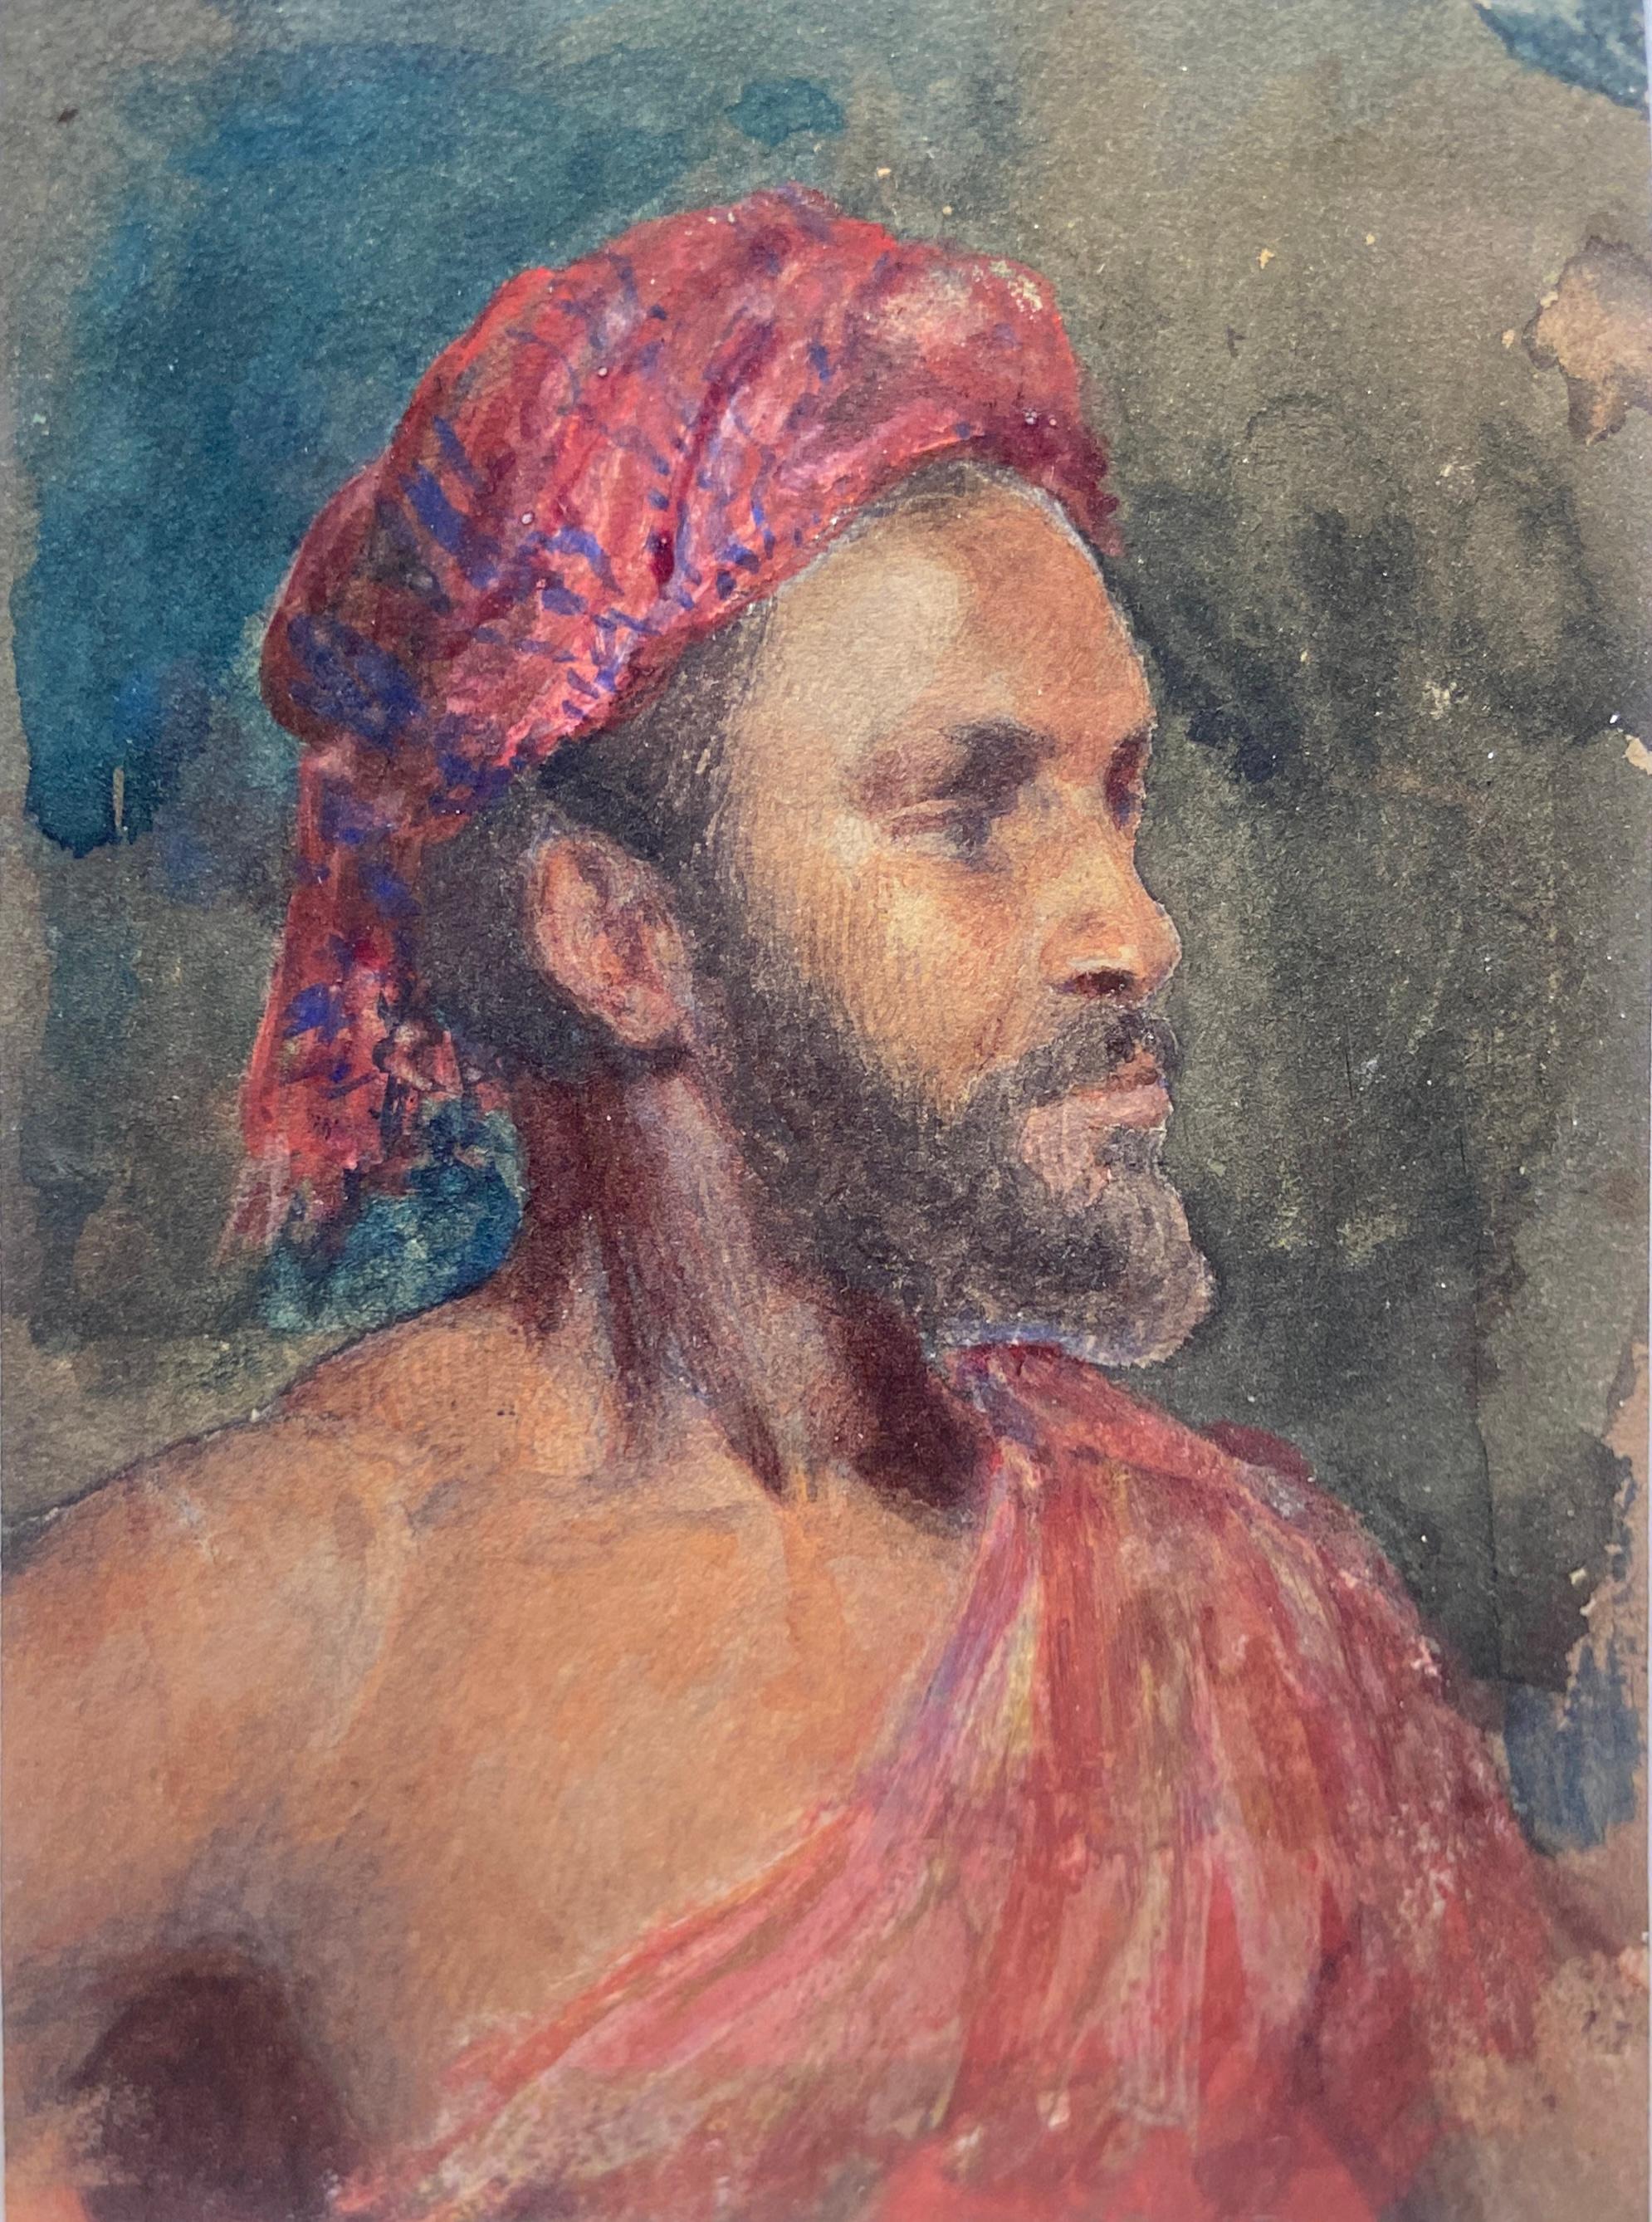 Porträt eines Mannes in einem roten Turban, orientalisches Aquarell, frühes 19. Jahrhundert